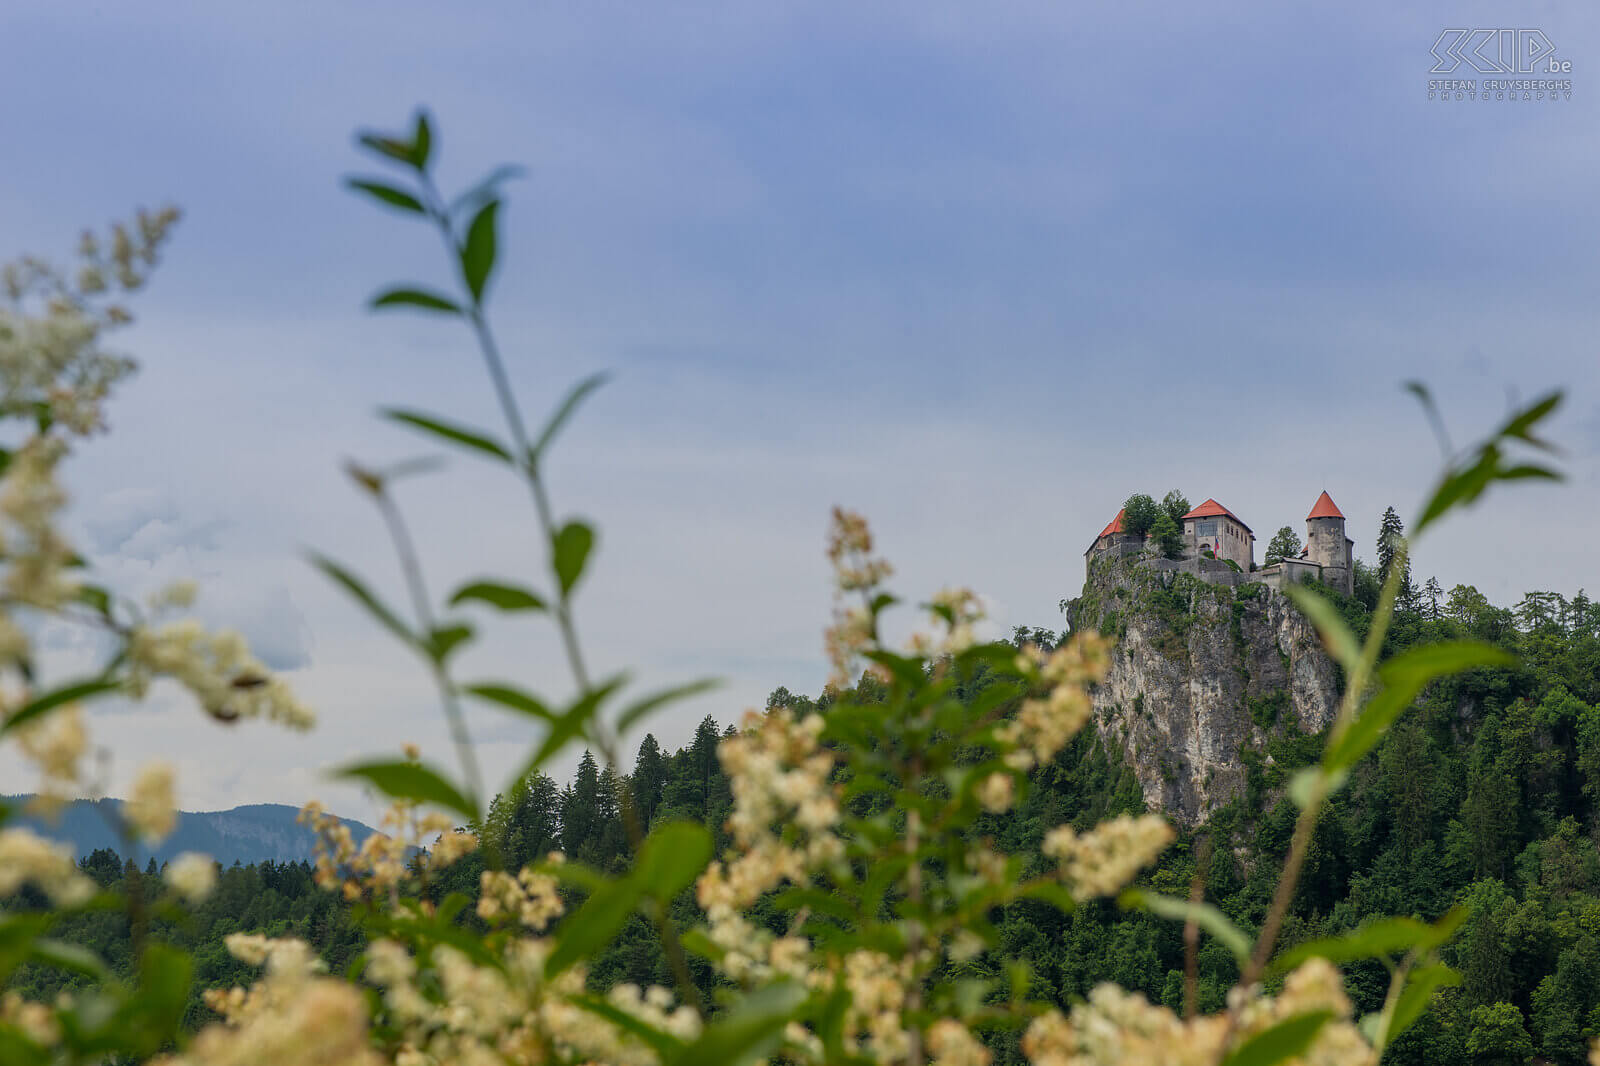 Bled - Kasteel Het kasteel van Bled staat op de top van een 130 meter hoge rots en dateert uit de 16de eeuw. Stefan Cruysberghs